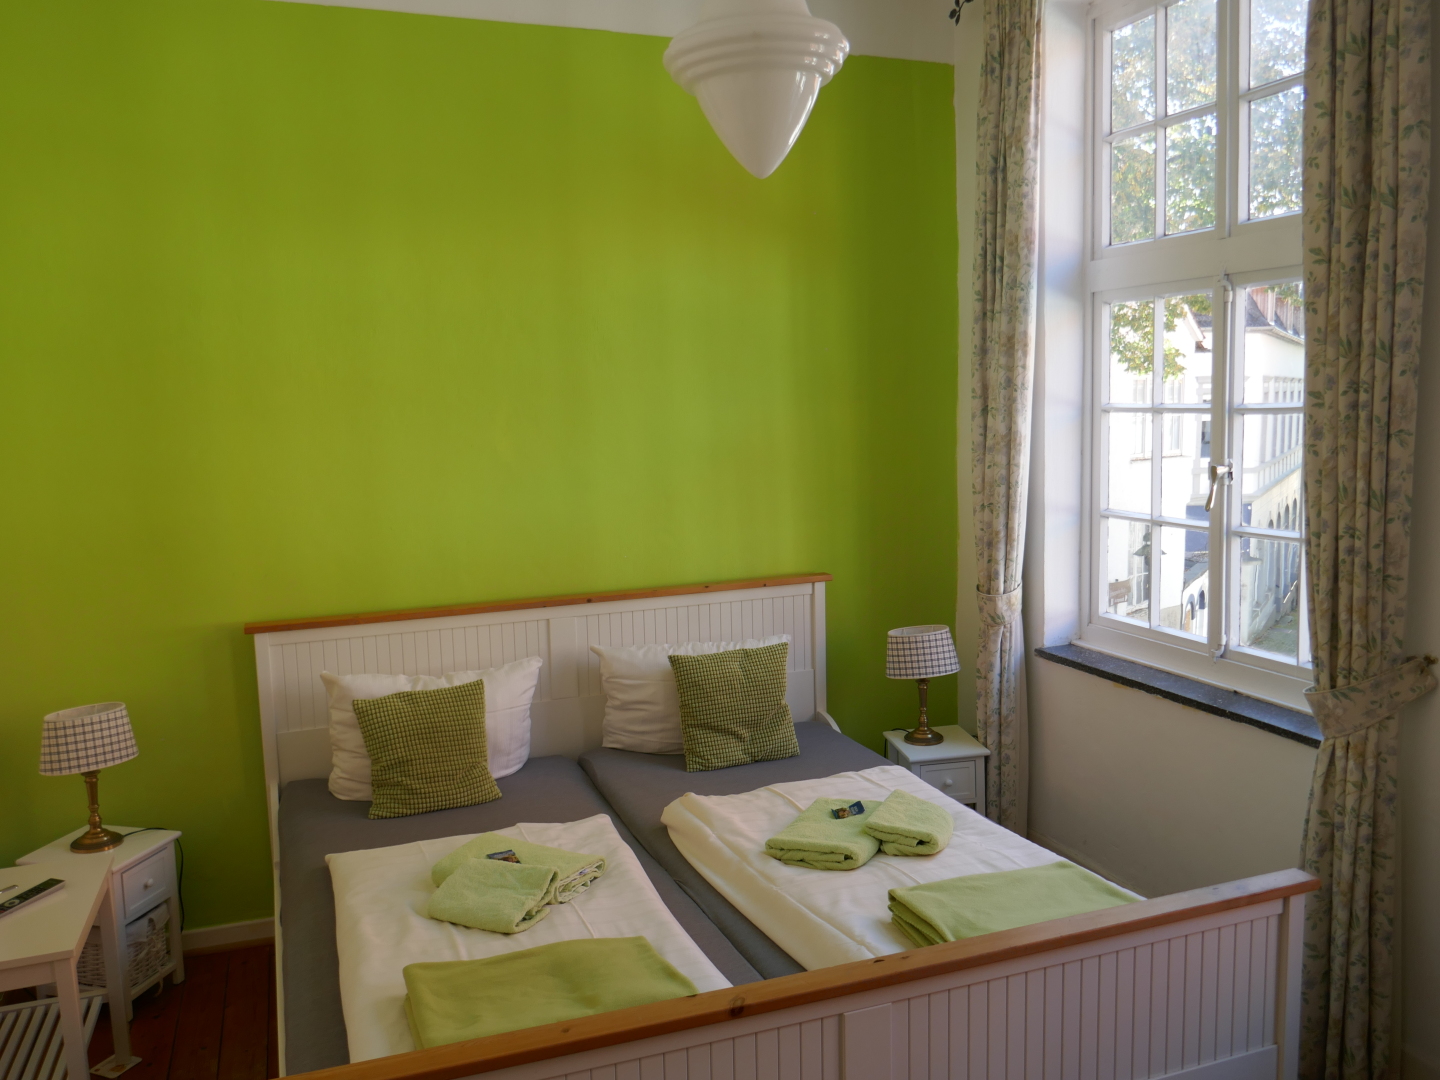 Unser grünes Zimmer im Hotel Drei Kronen.